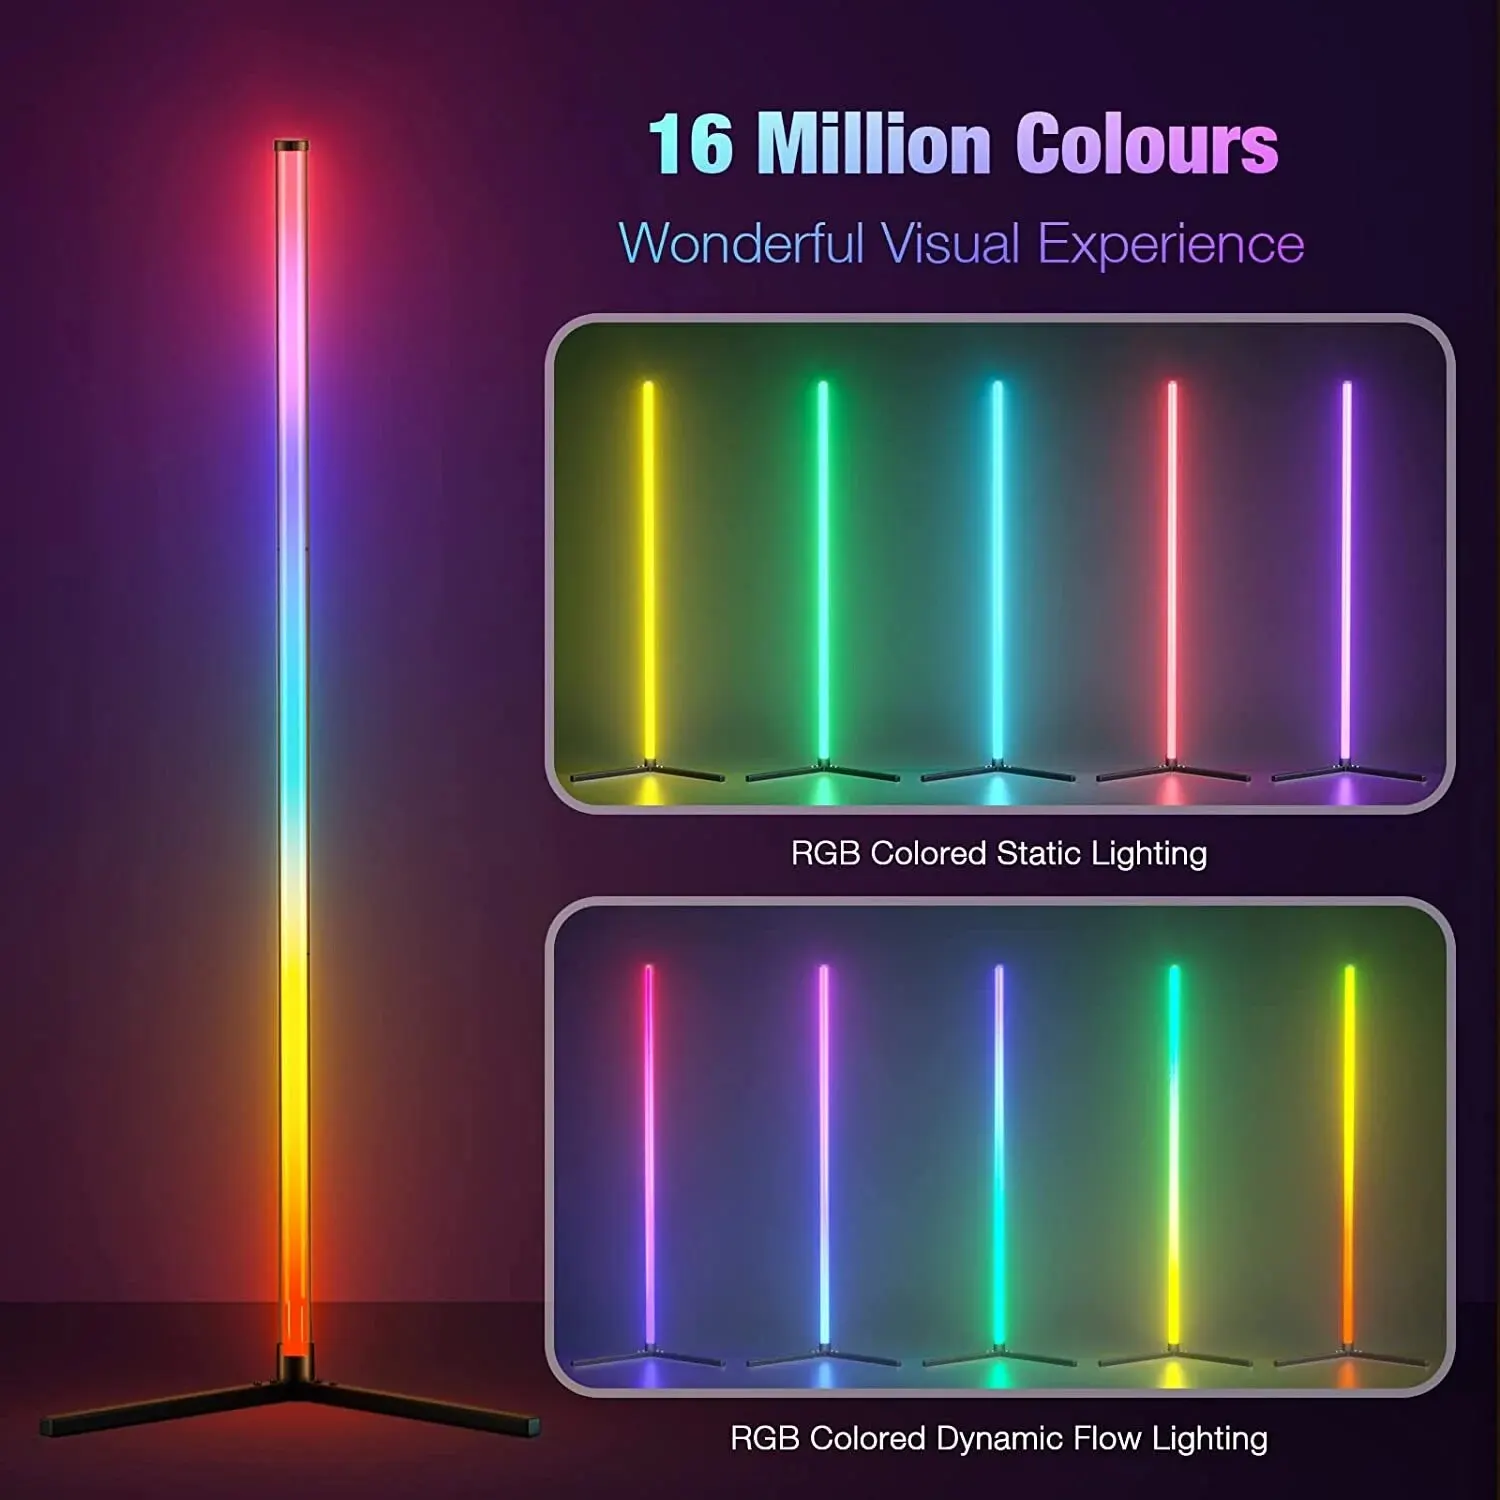 Smart LED Ecke Stehle uchte 155cm/61 Zoll rgbic 16 Millionen DIY Farblicht Musik Sync Timer Einstellung App-Steuerung für Wohnzimmer Schlafzimmer